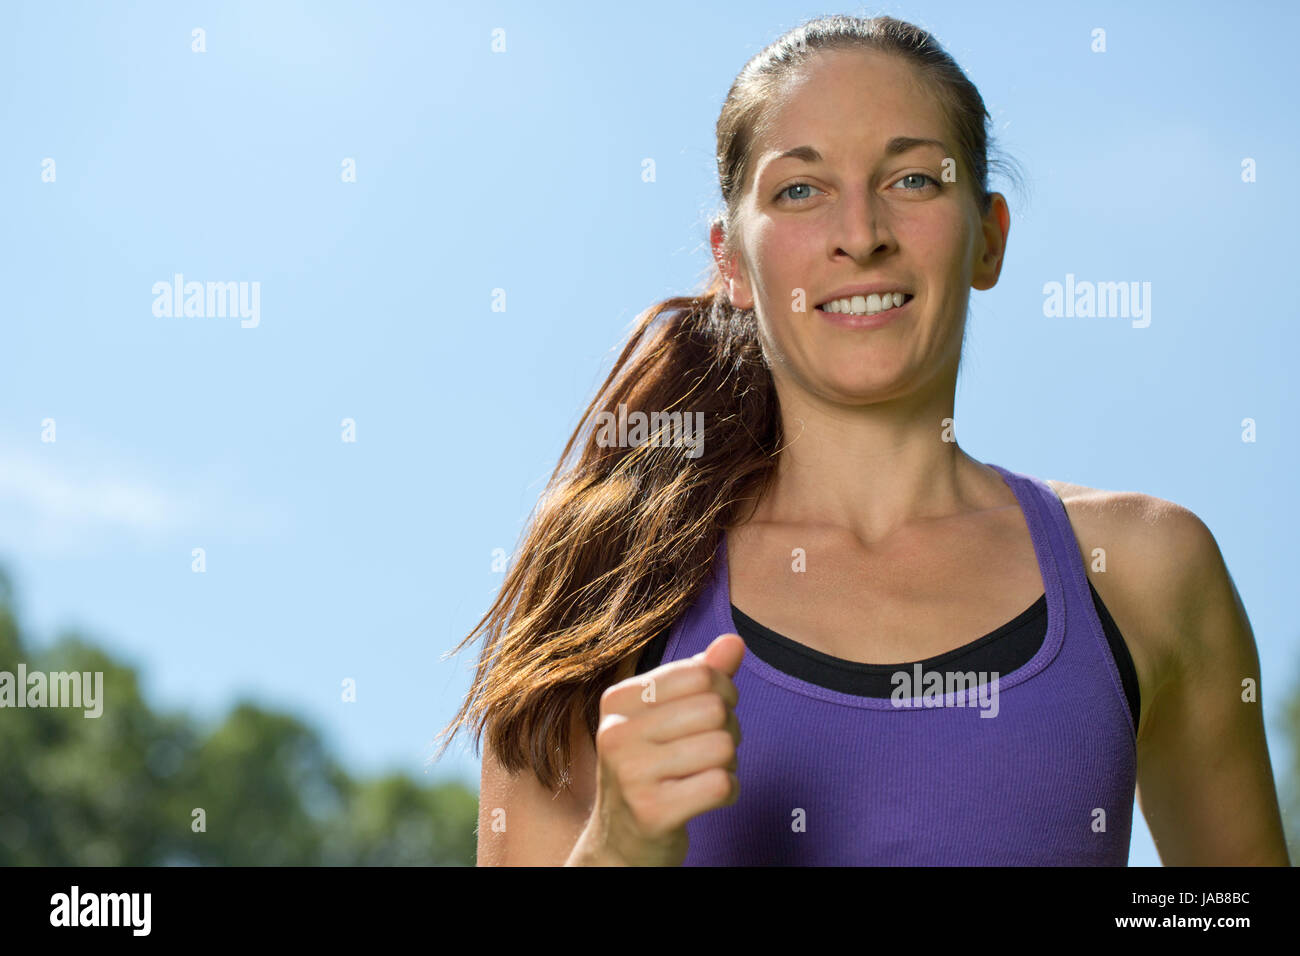 Junge Frau macht Sport in der Natur beim Laufen Joggen Training Stock Photo